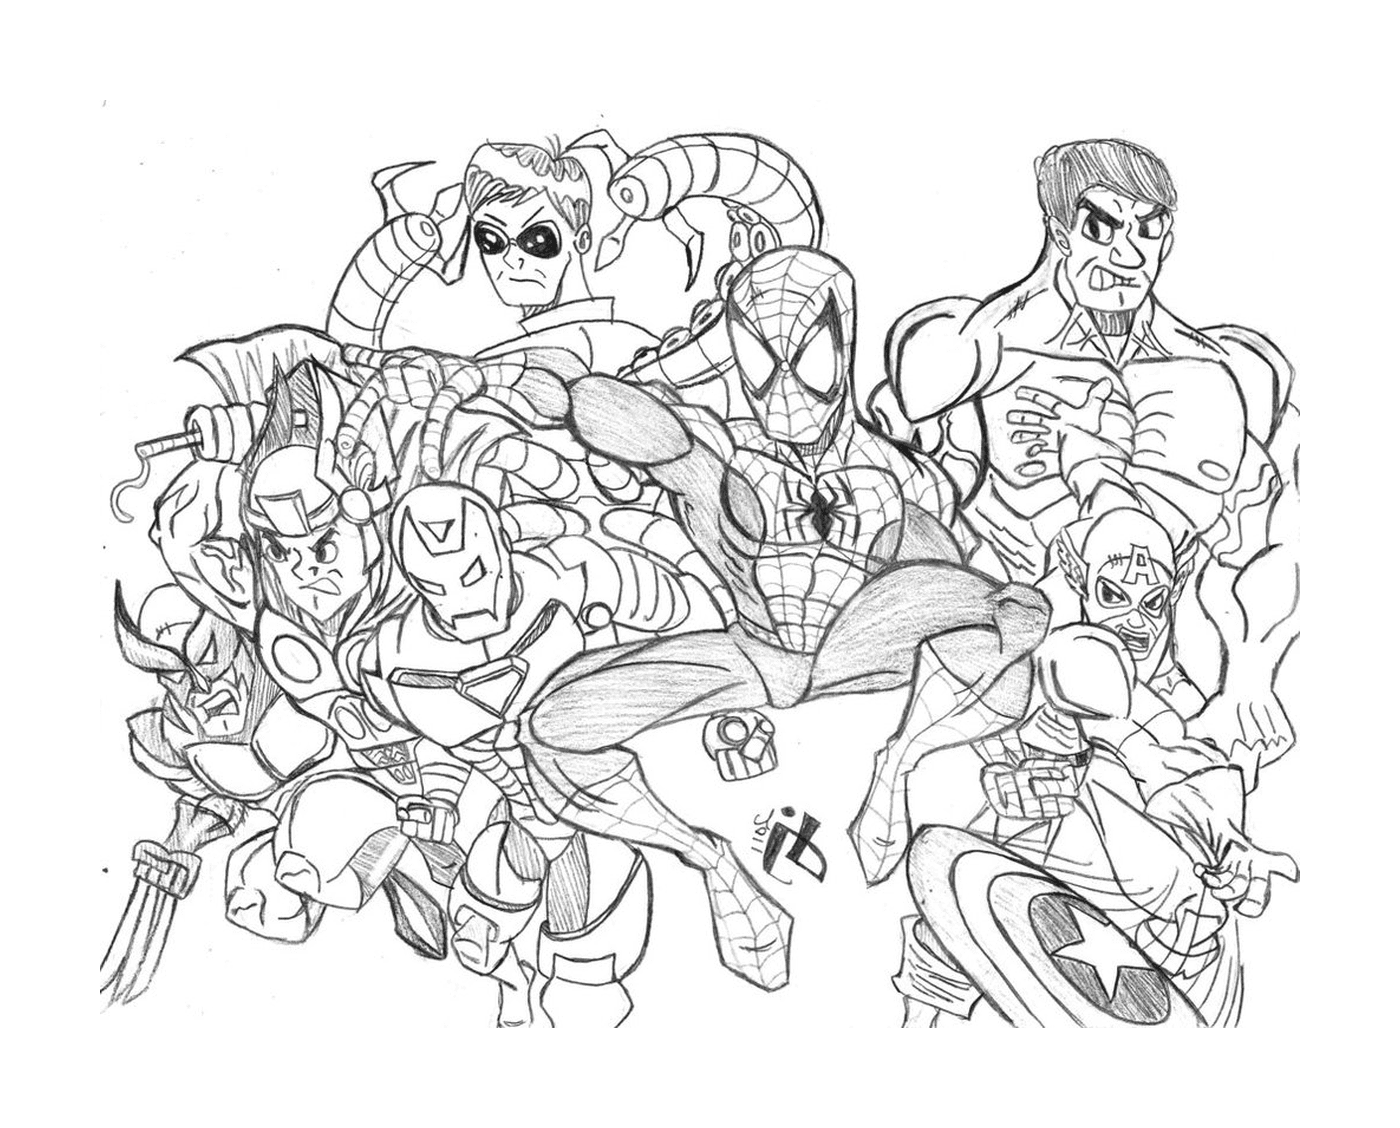  Um grupo de super-heróis desenhados 